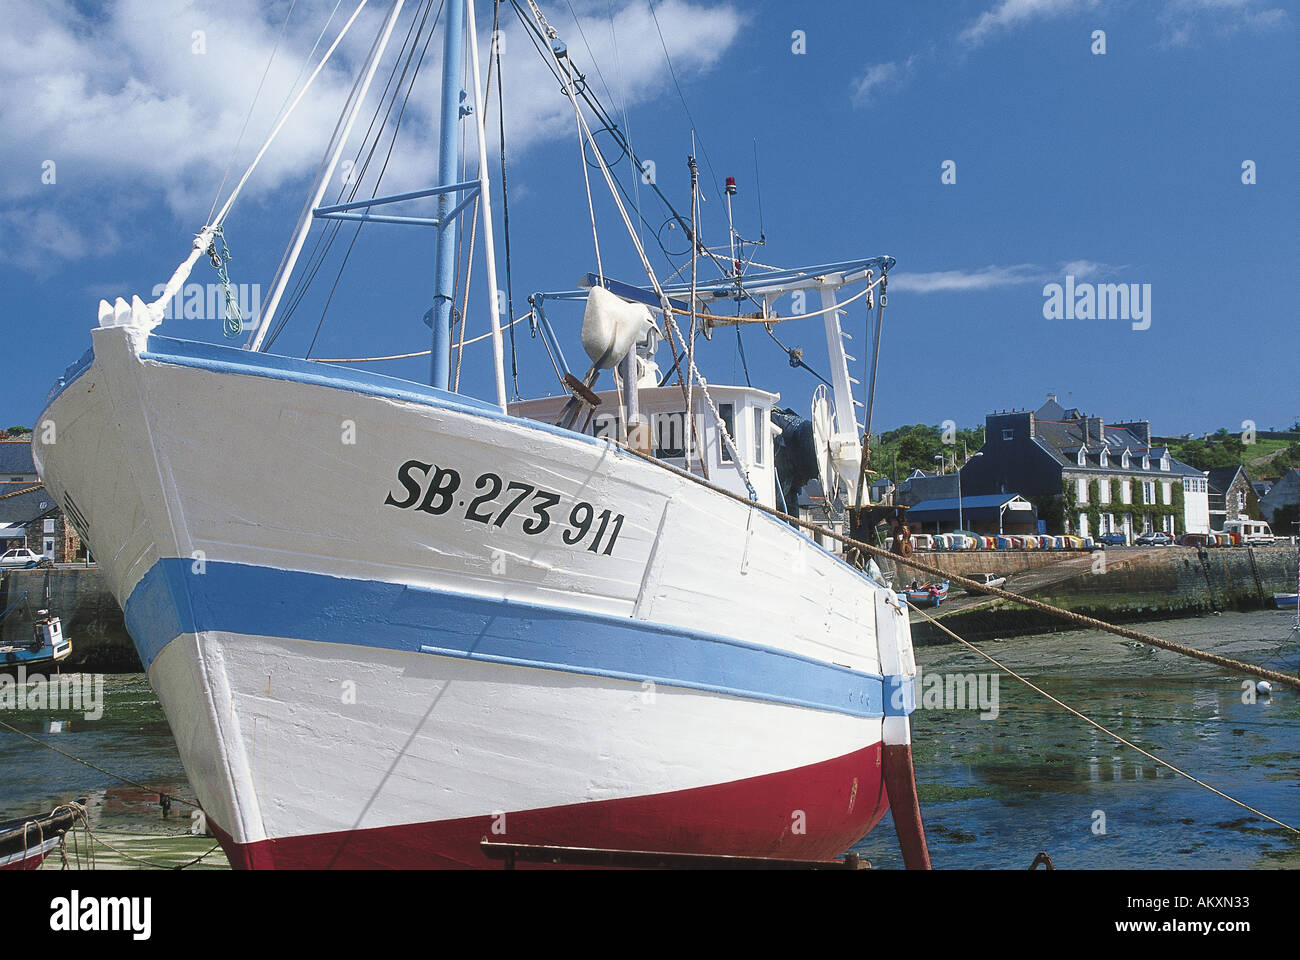 Ein Fischerboot die Nummer der Eintragung entlang des Rumpfes im Hafen Dahouet Frankreich gemalt Stockfoto